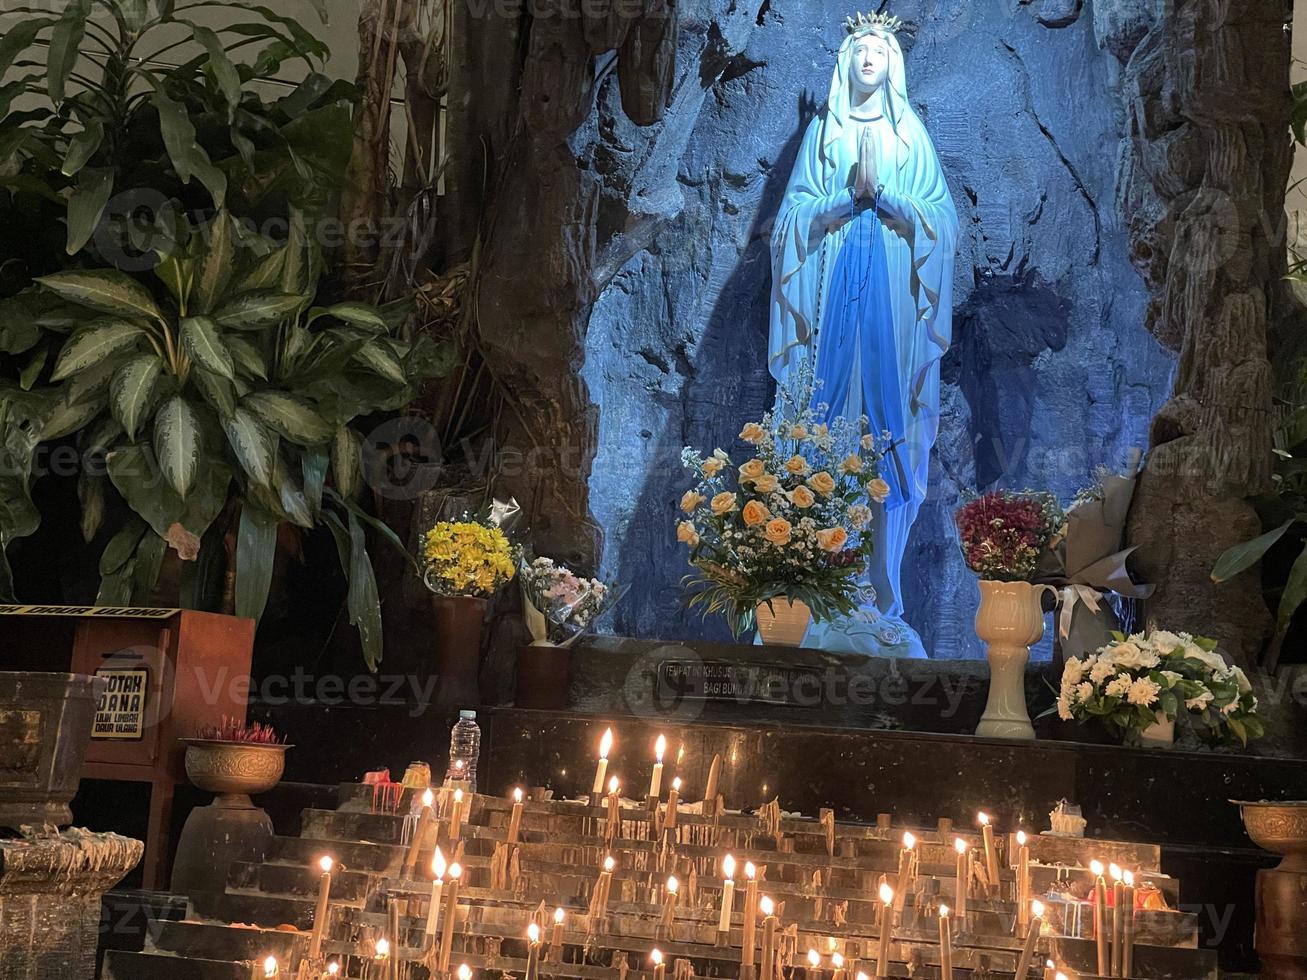 la grotte de la vierge marie, statue de la vierge marie dans une grotte rocheuse chapelle église catholique avec végétation tropicale photo